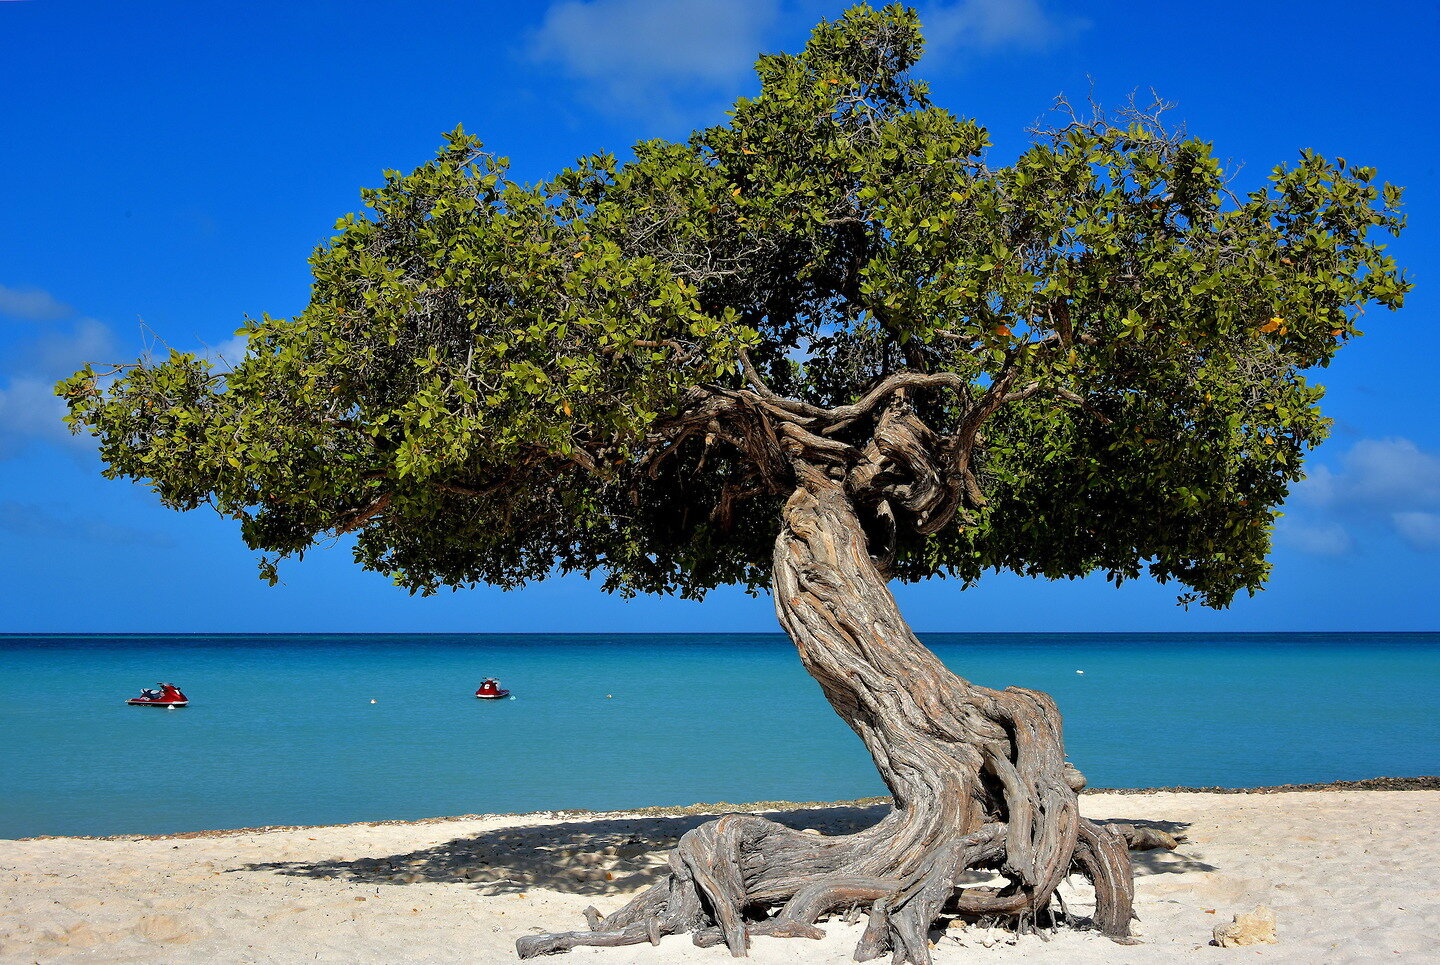 Aruba-Oranjestad-Eagle-Beach-Divi-divi-Tree.jpg